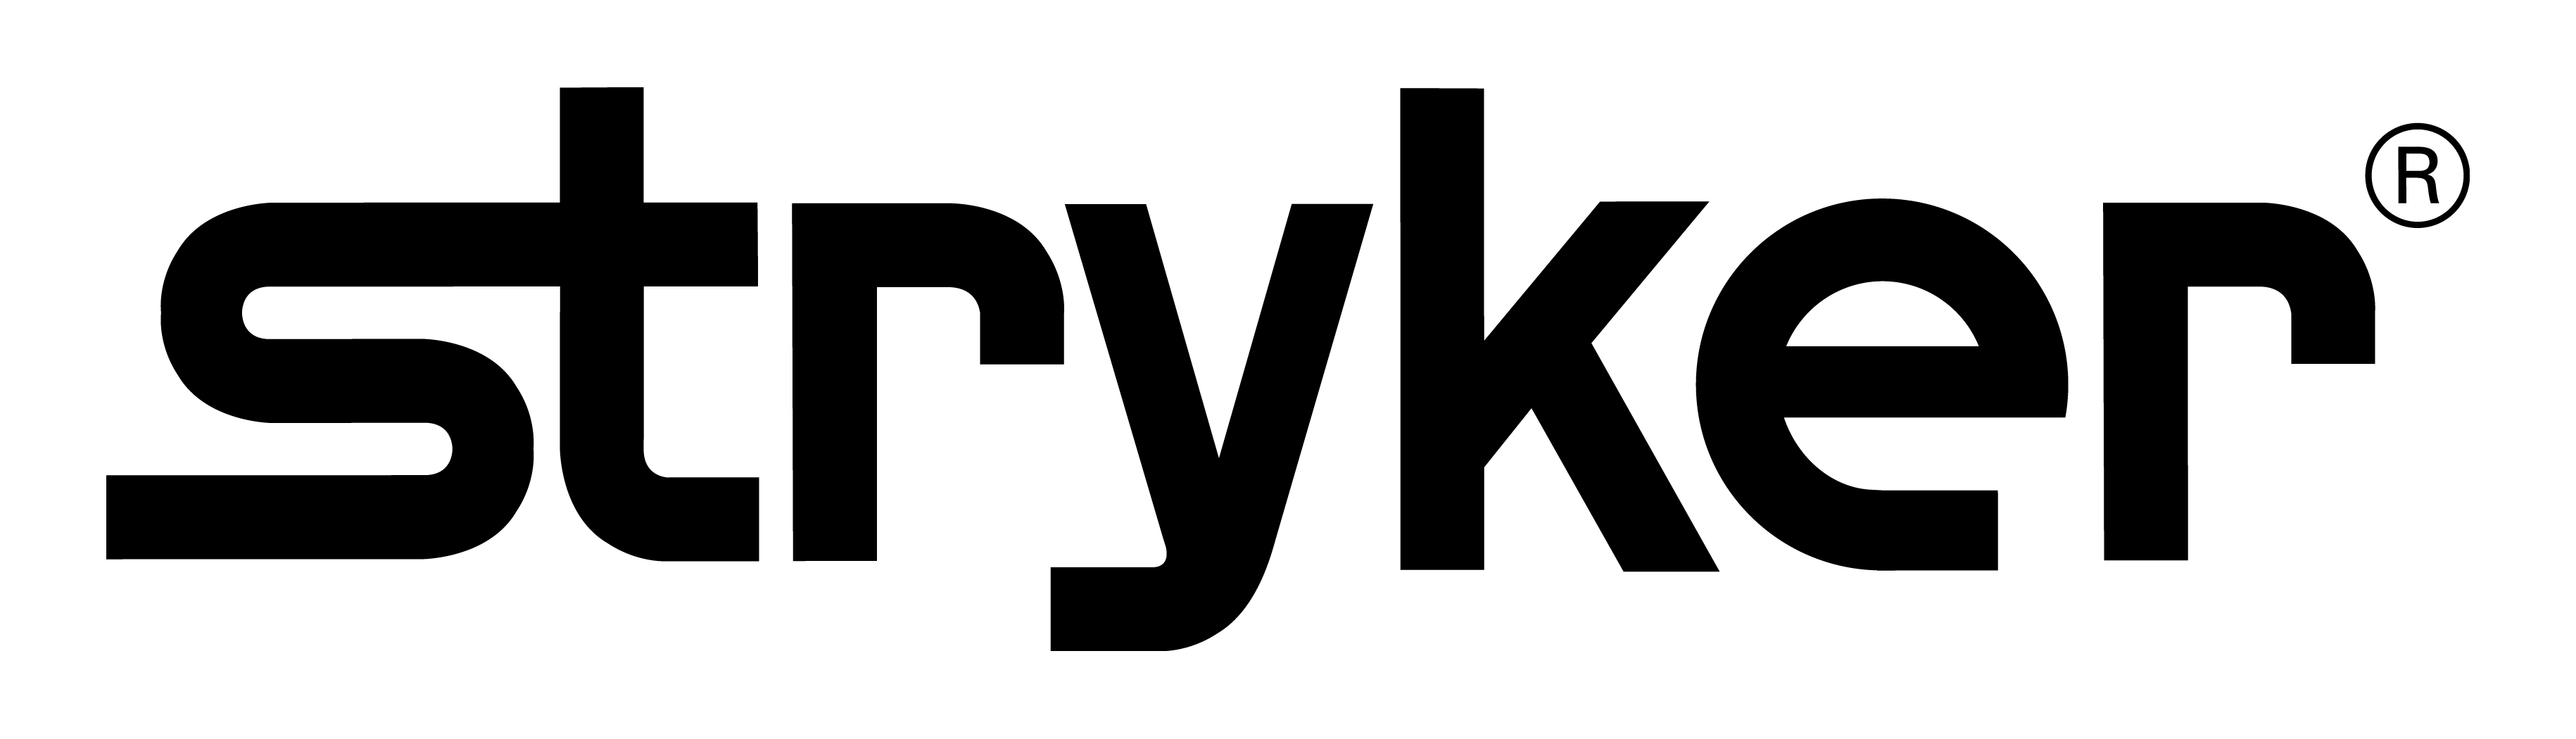 stryker-logo-web